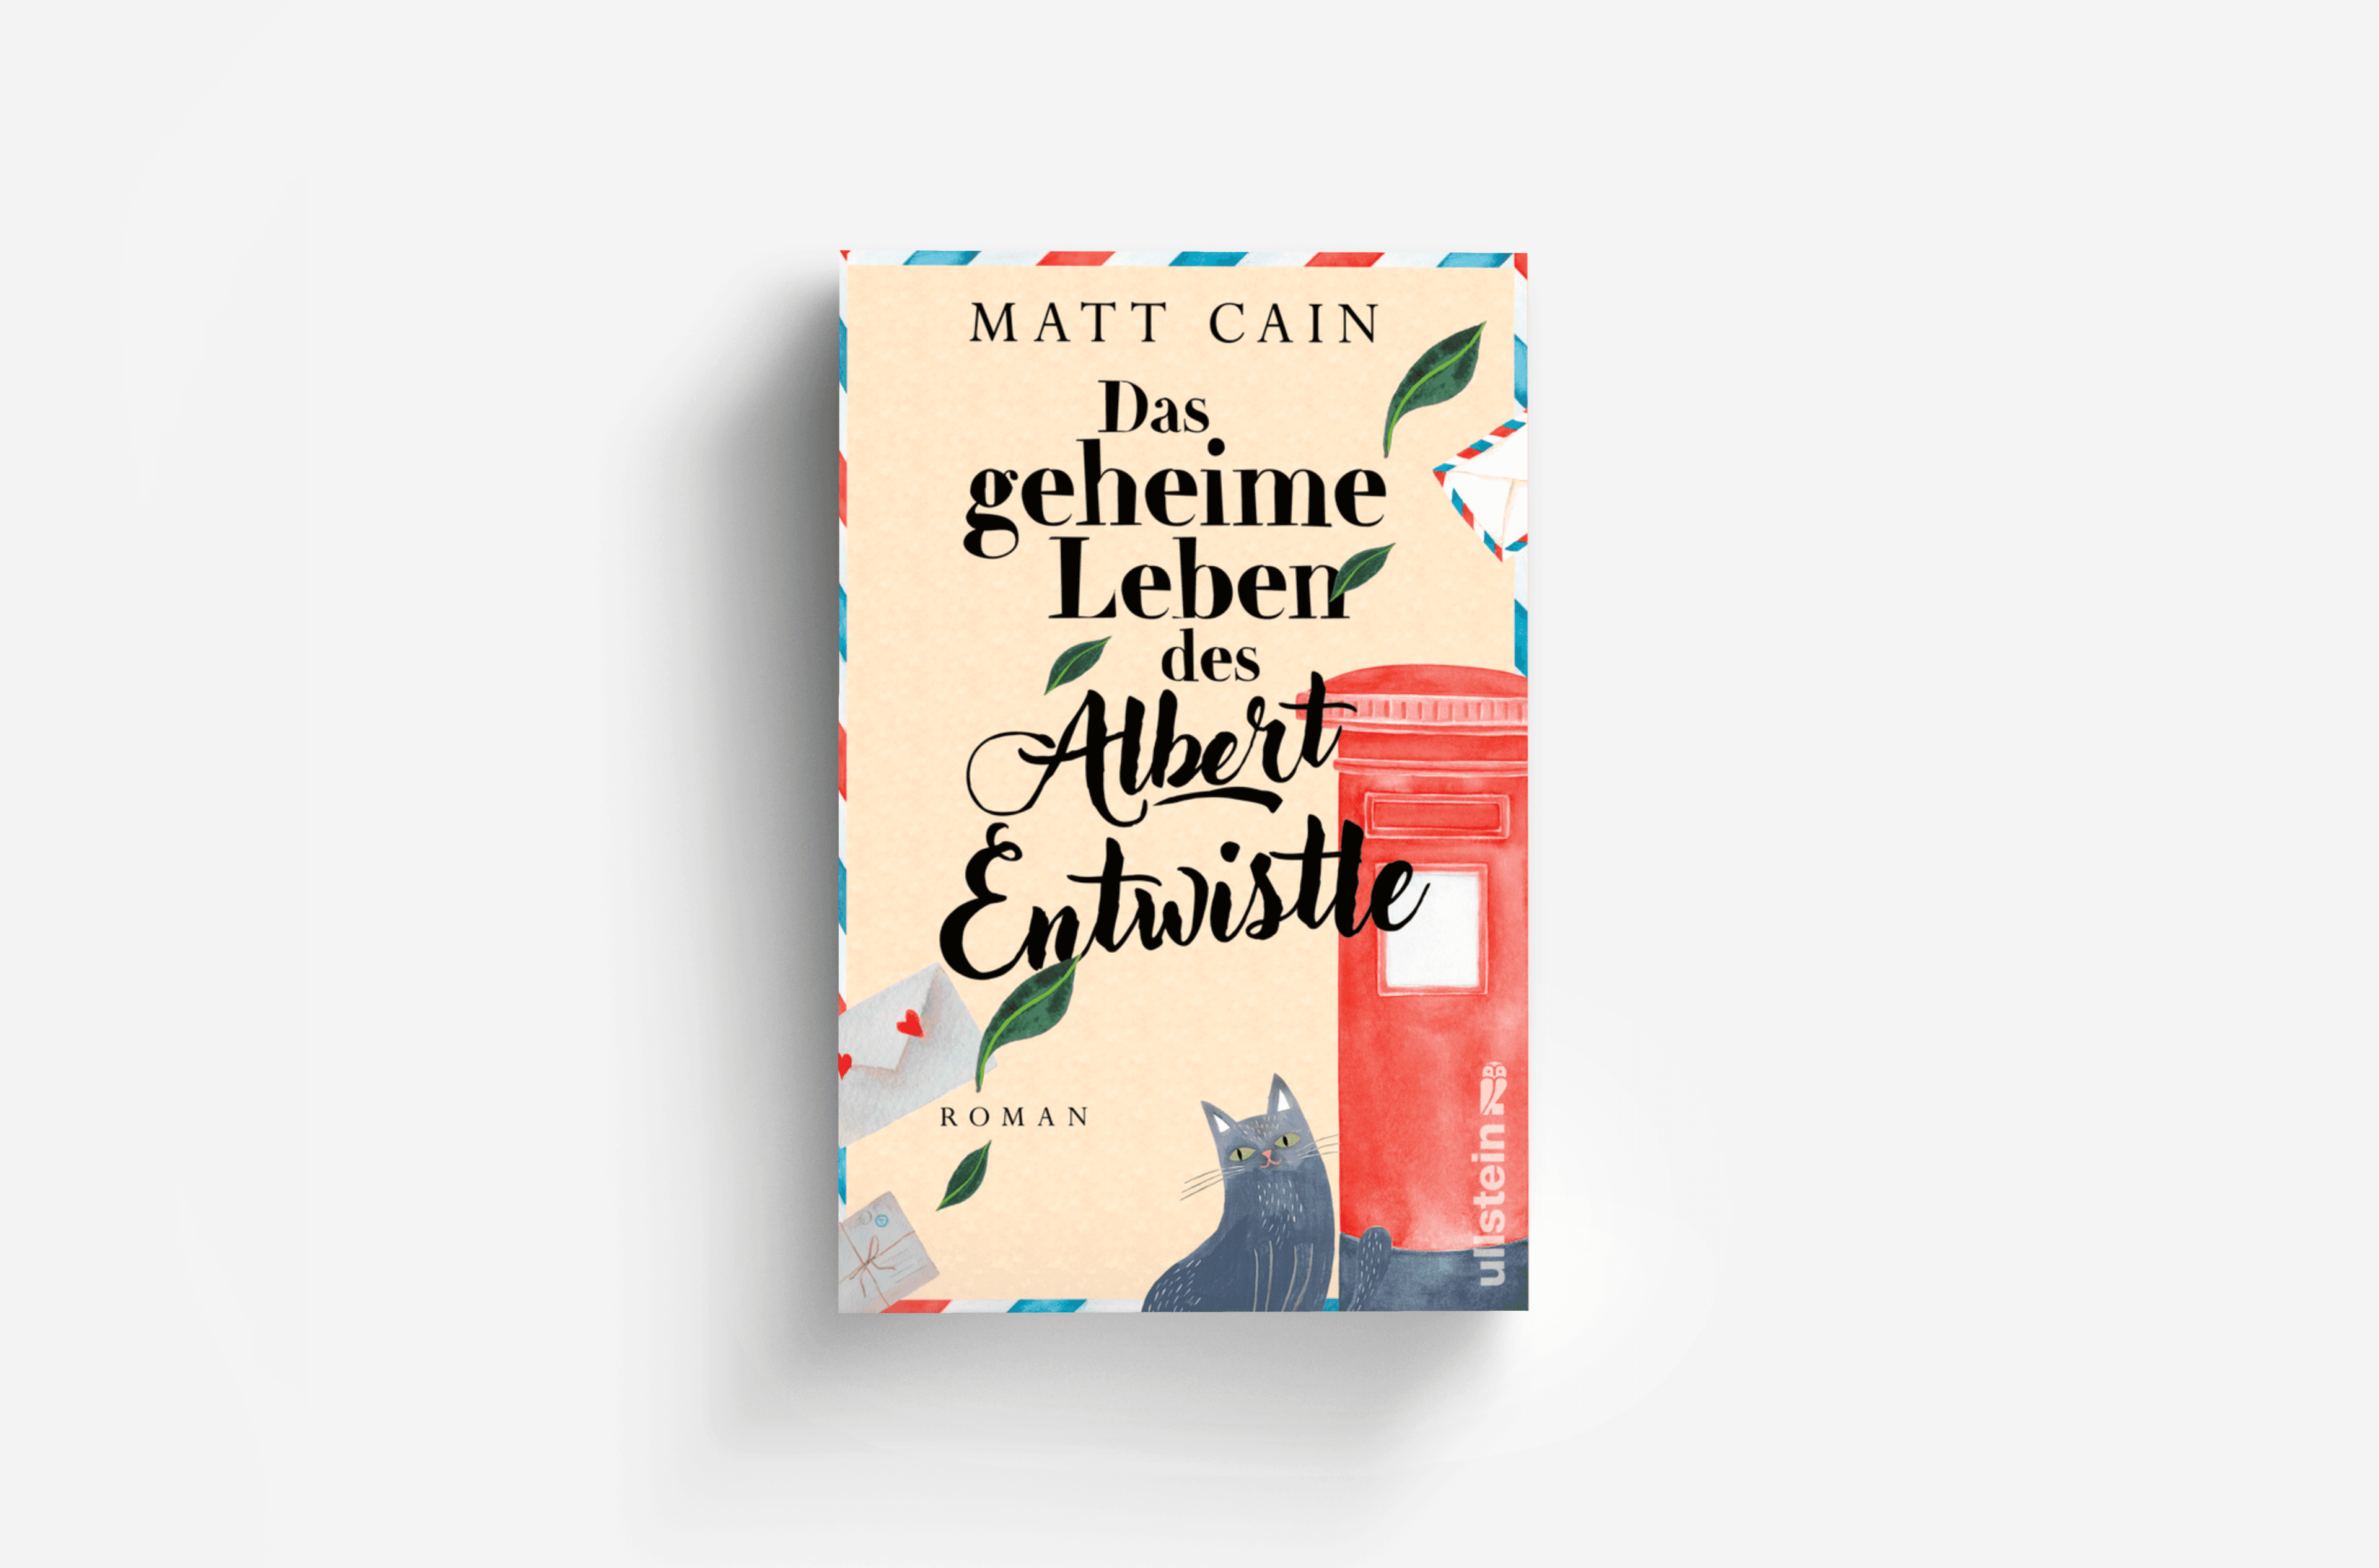 Buchcover von Das geheime Leben des Albert Entwistle